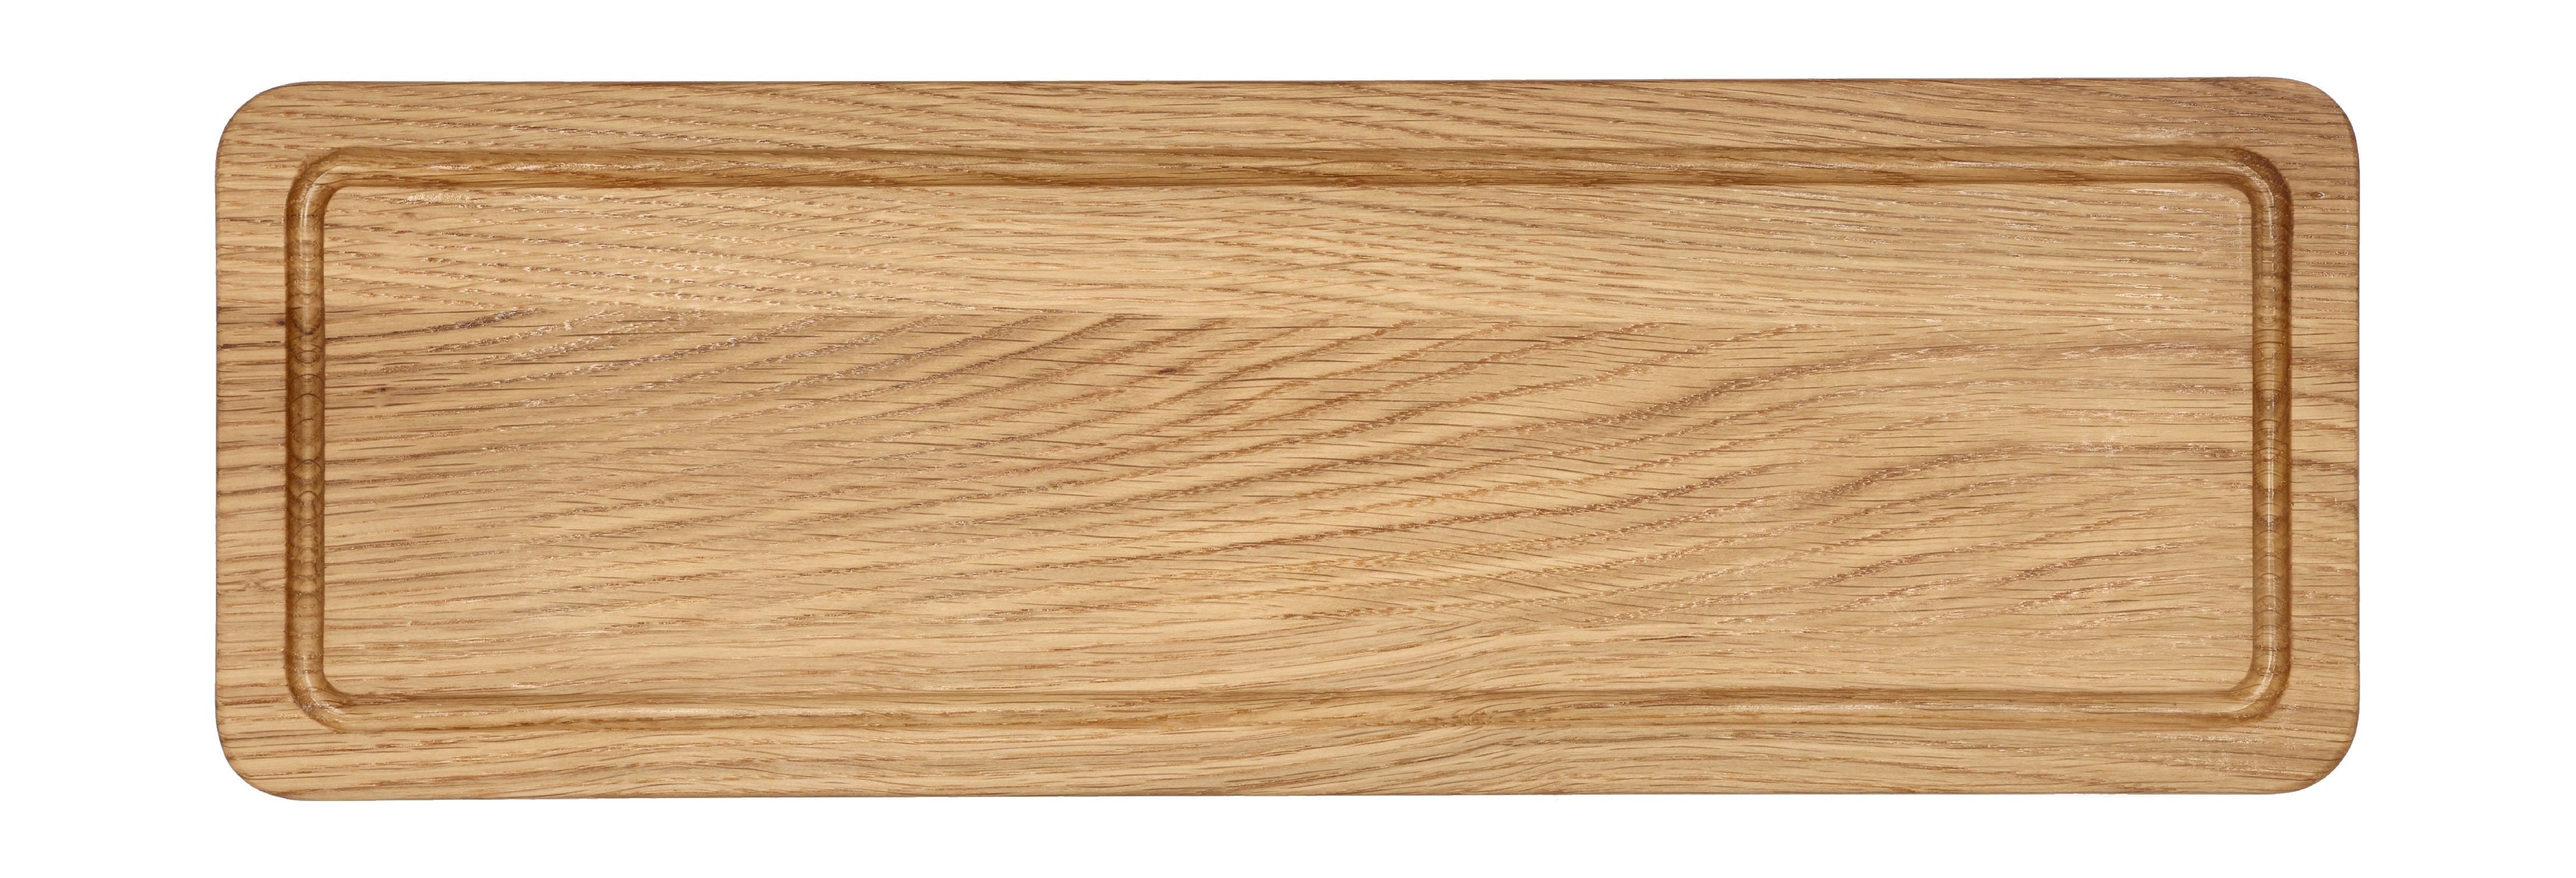 Morsø Foresta Cut Board, 50x17x1,5 cm